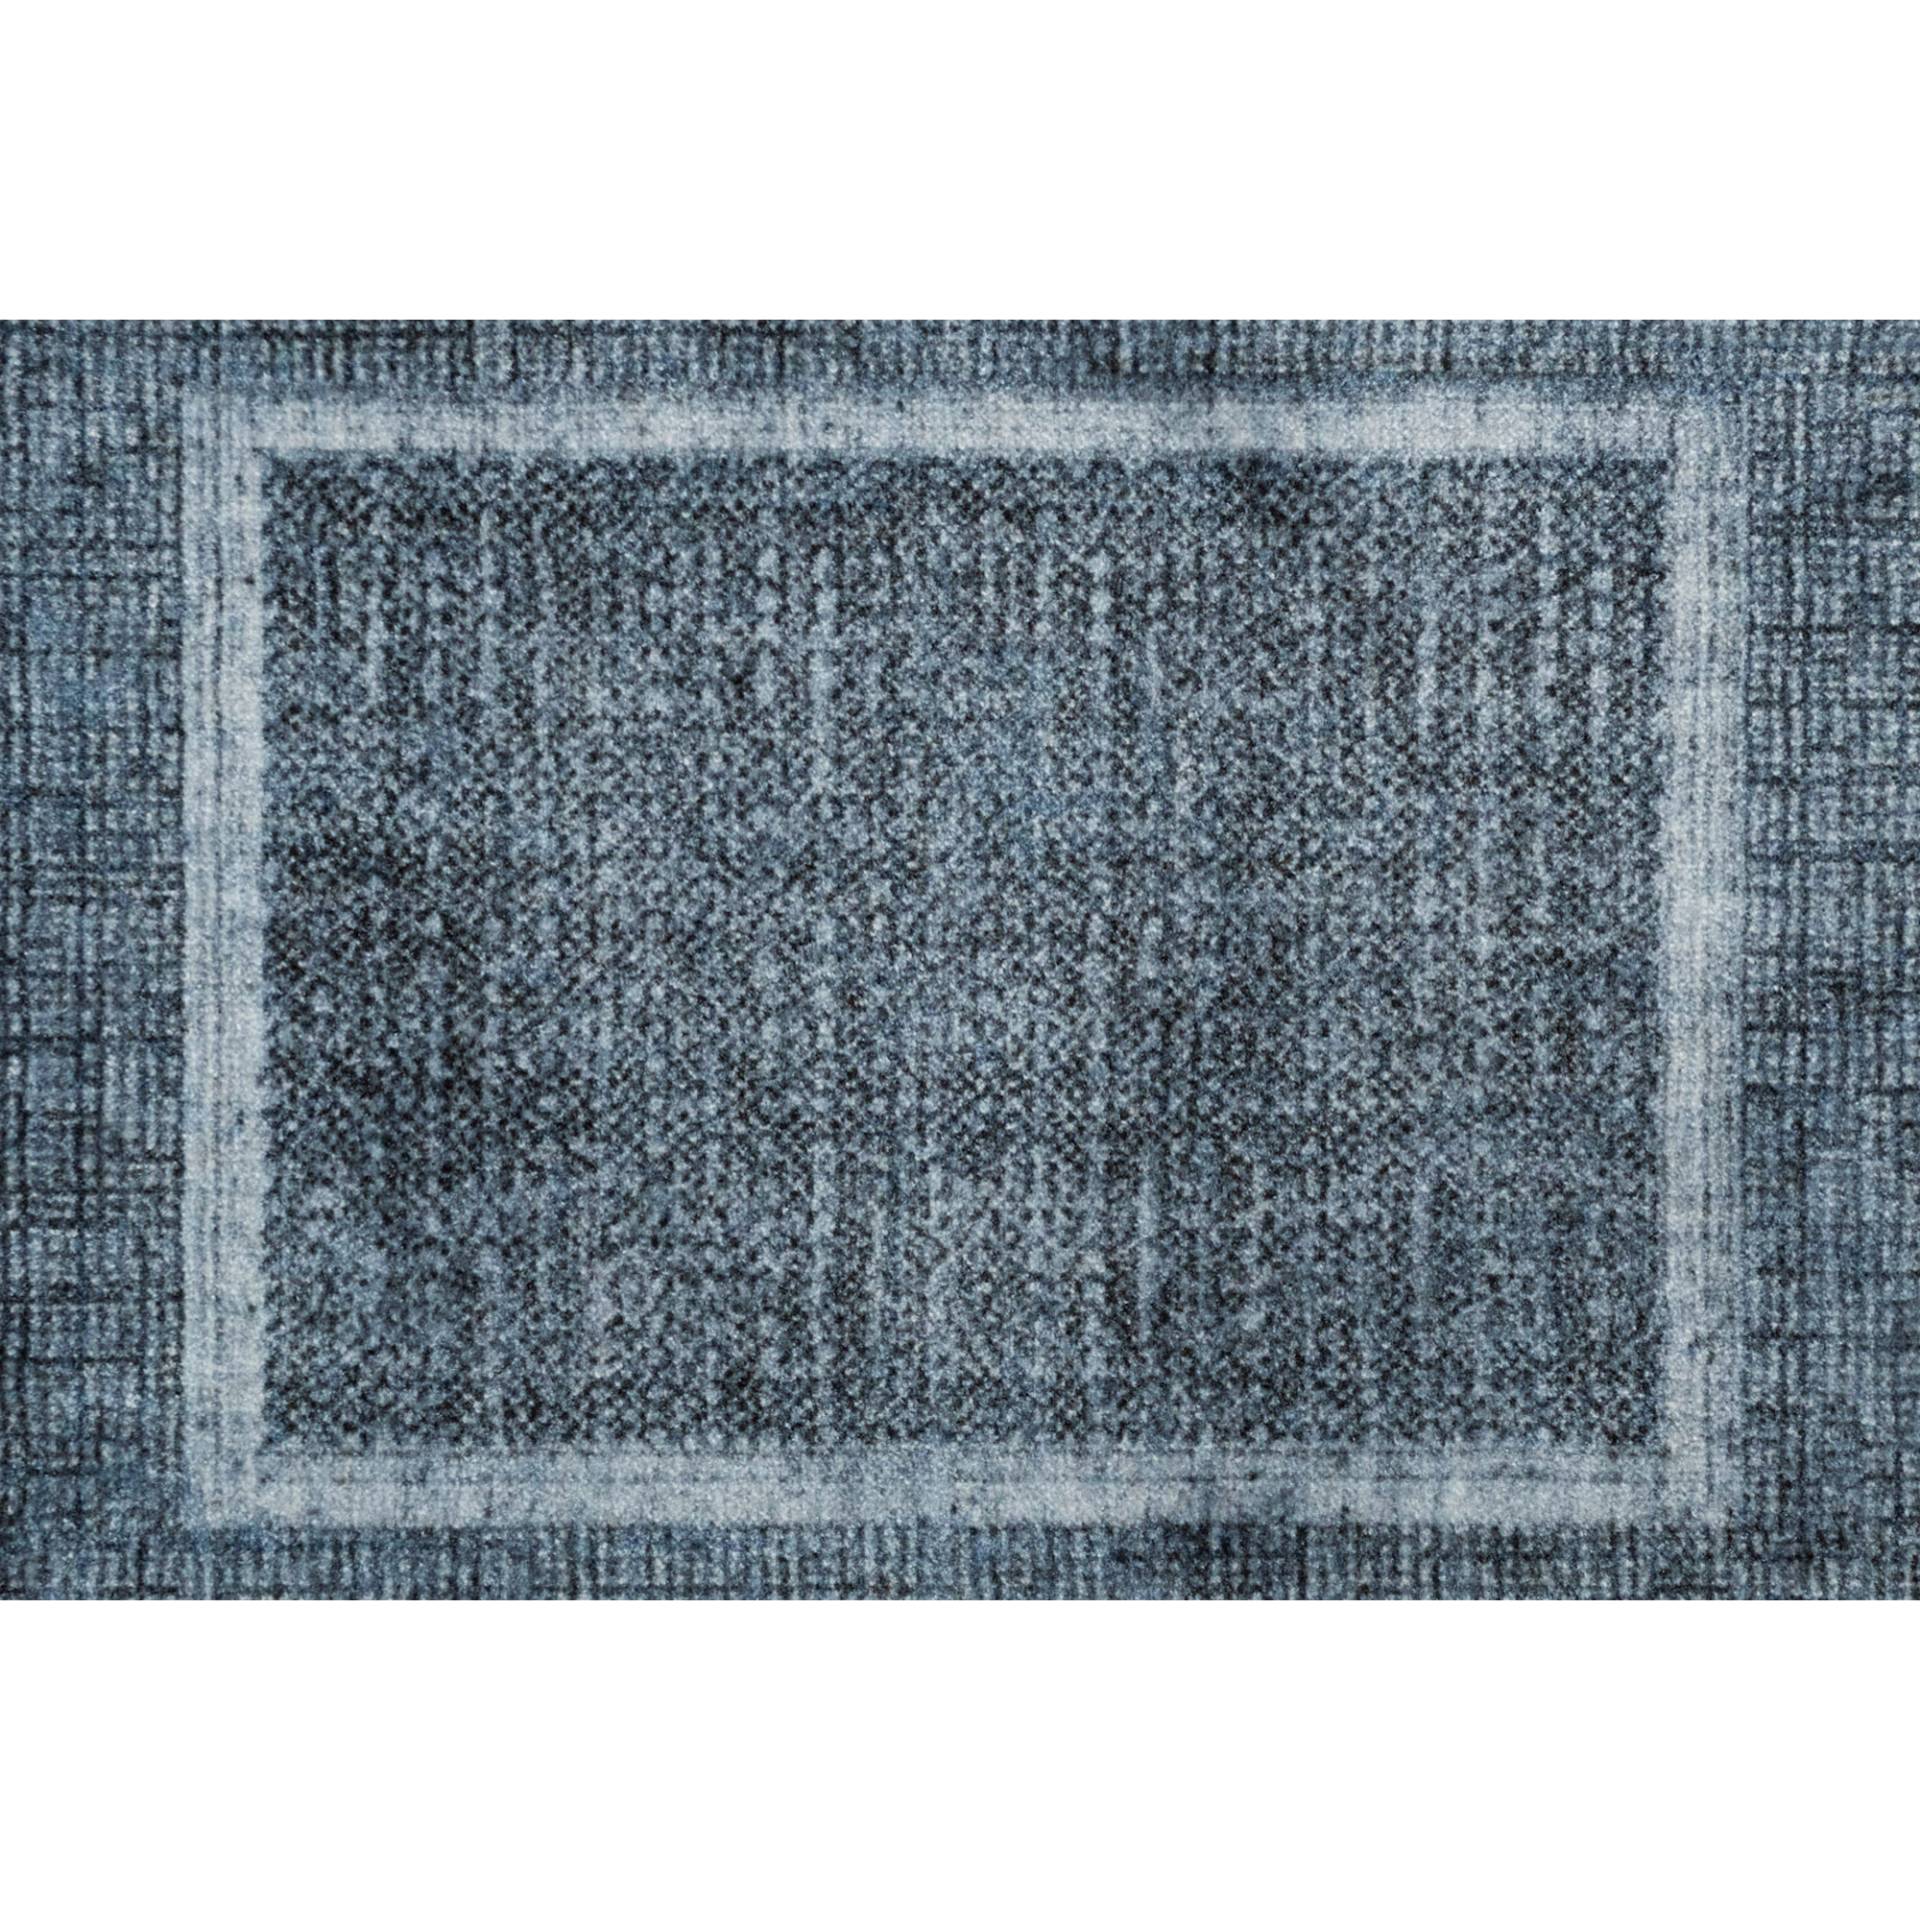 Barbara Becker Fußmatte 'BB Square' trueblue 50 x 70 cm von barbara becker